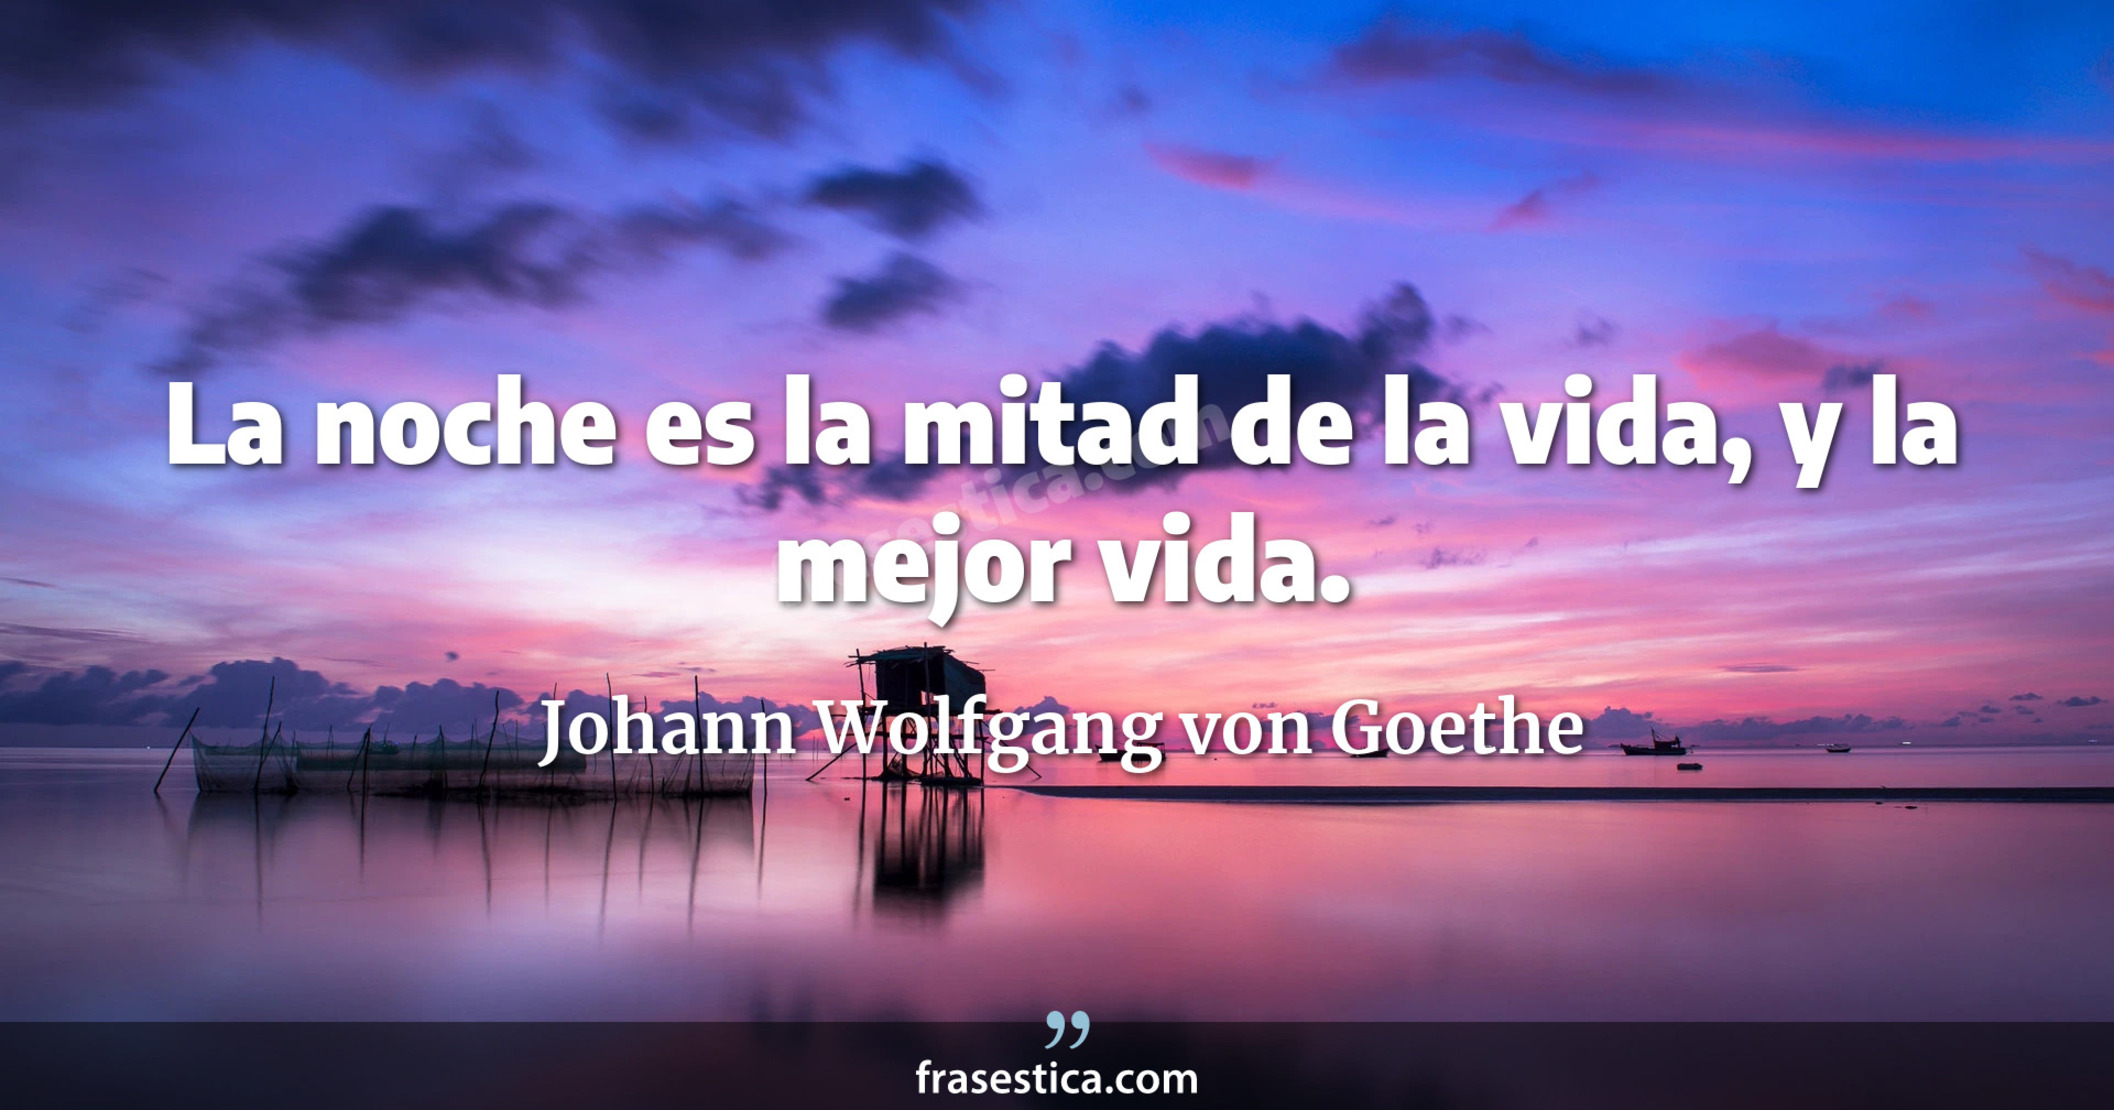 La noche es la mitad de la vida, y la mejor vida. - Johann Wolfgang von Goethe